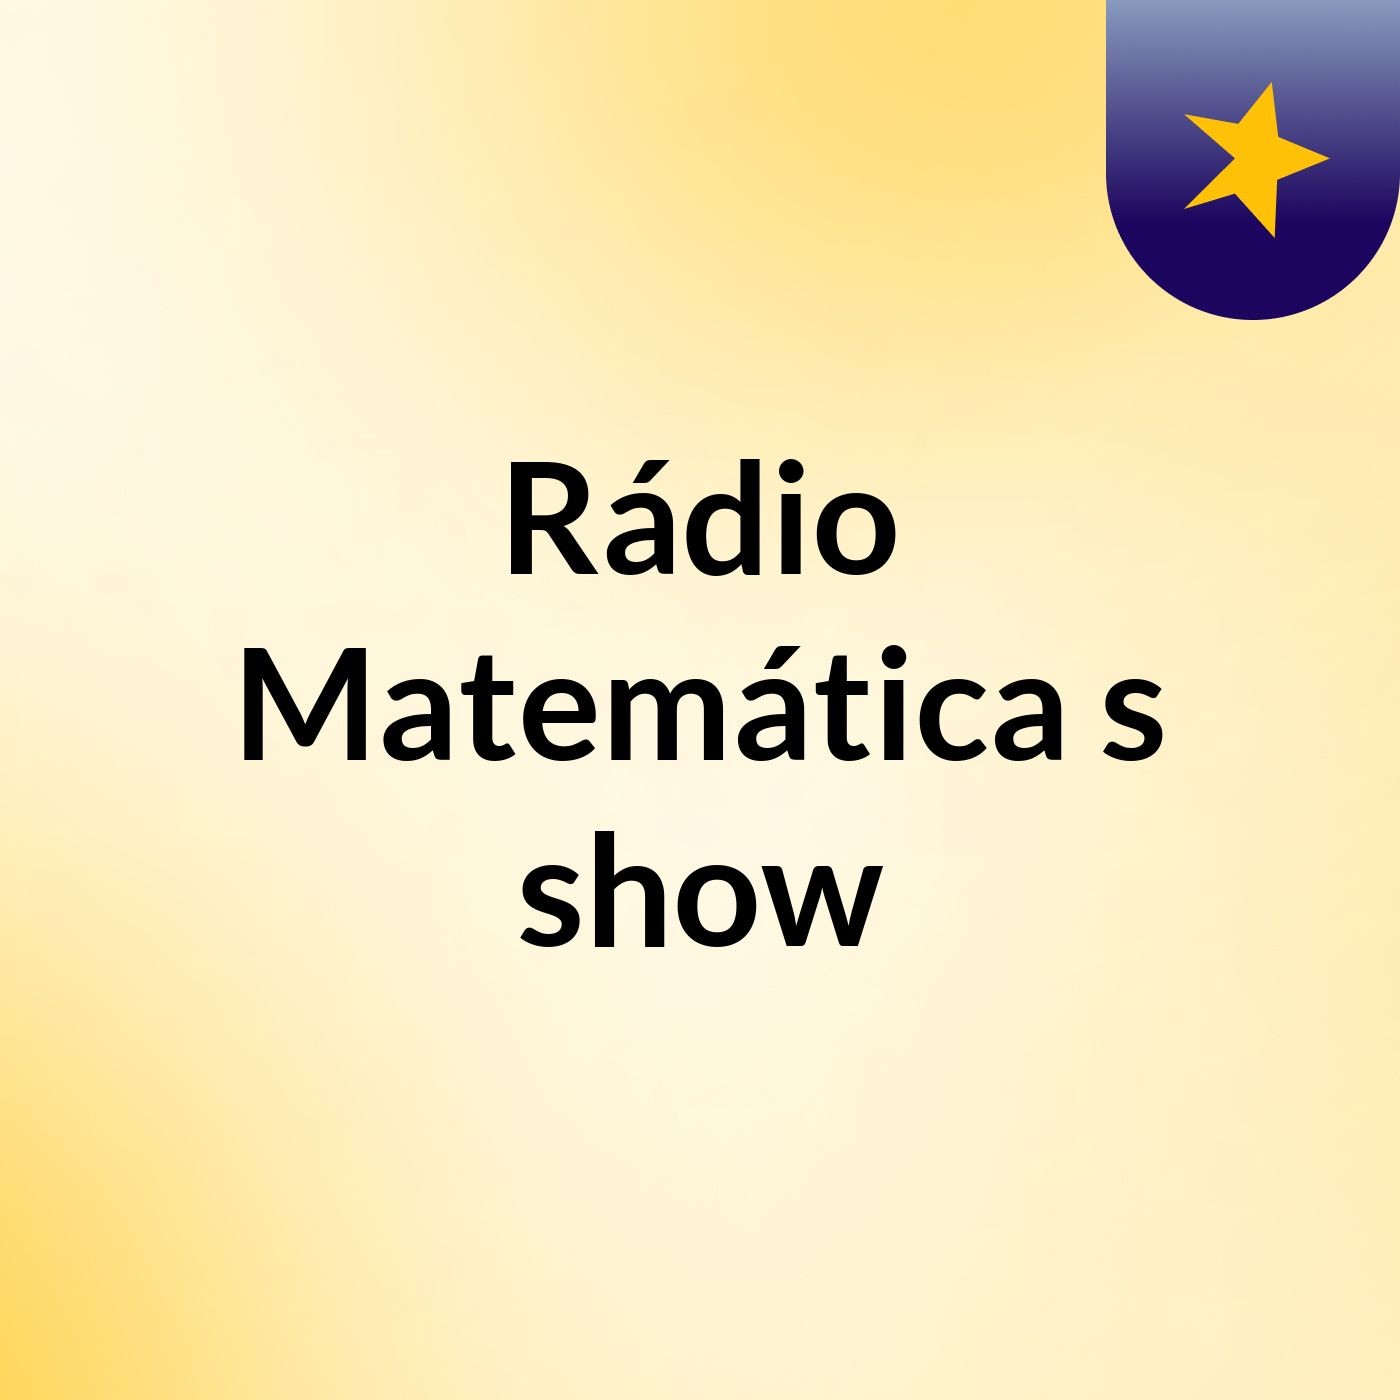 Rádio Matemática's show